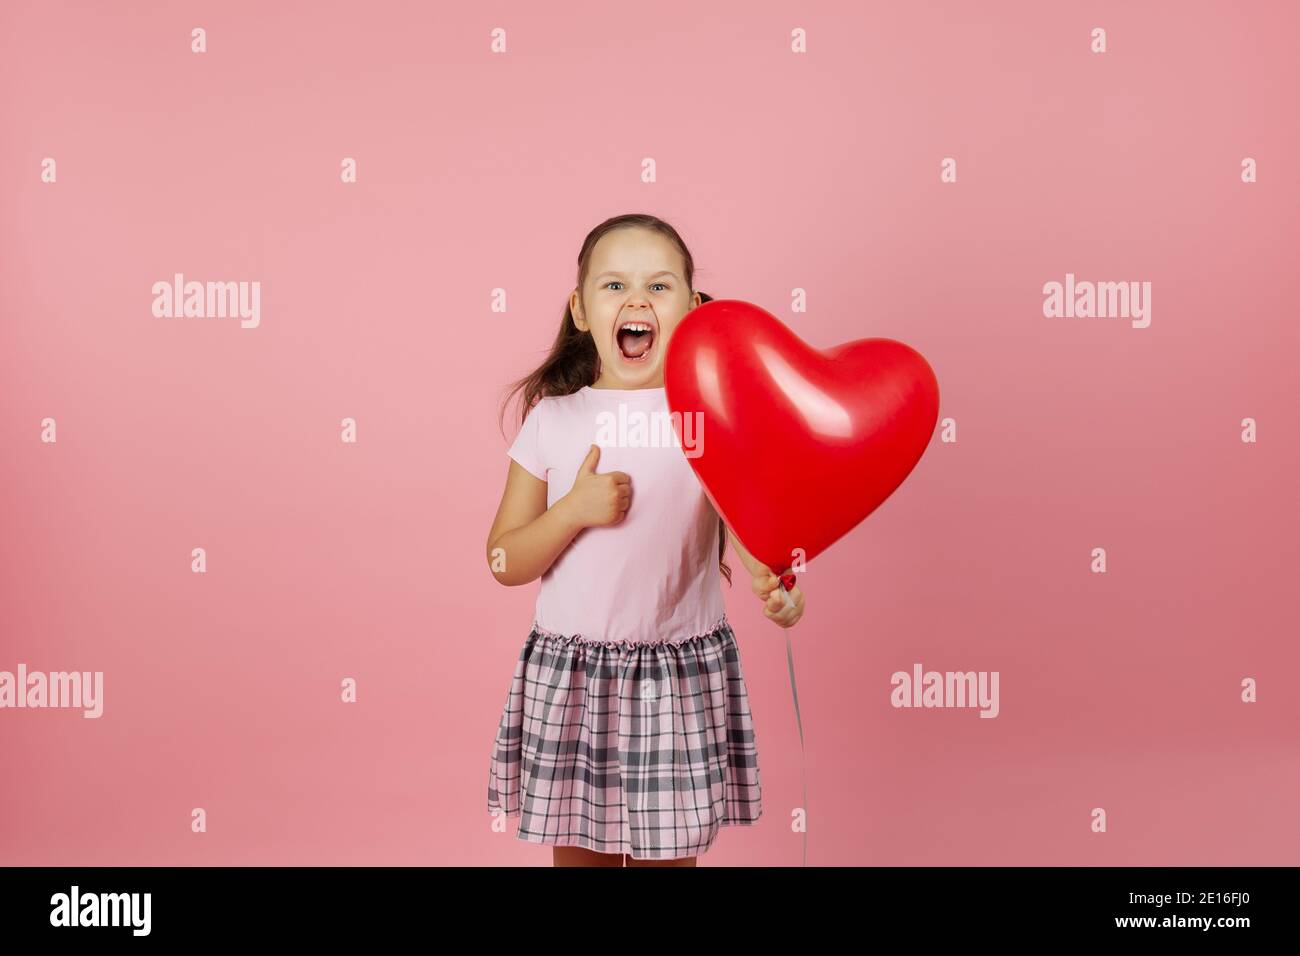 primo piano entusiasta rapturous estatica ragazza in abito rosa tiene rosso palloncino a forma di cuore e dà pollici in su isolato su sfondo rosa Foto Stock